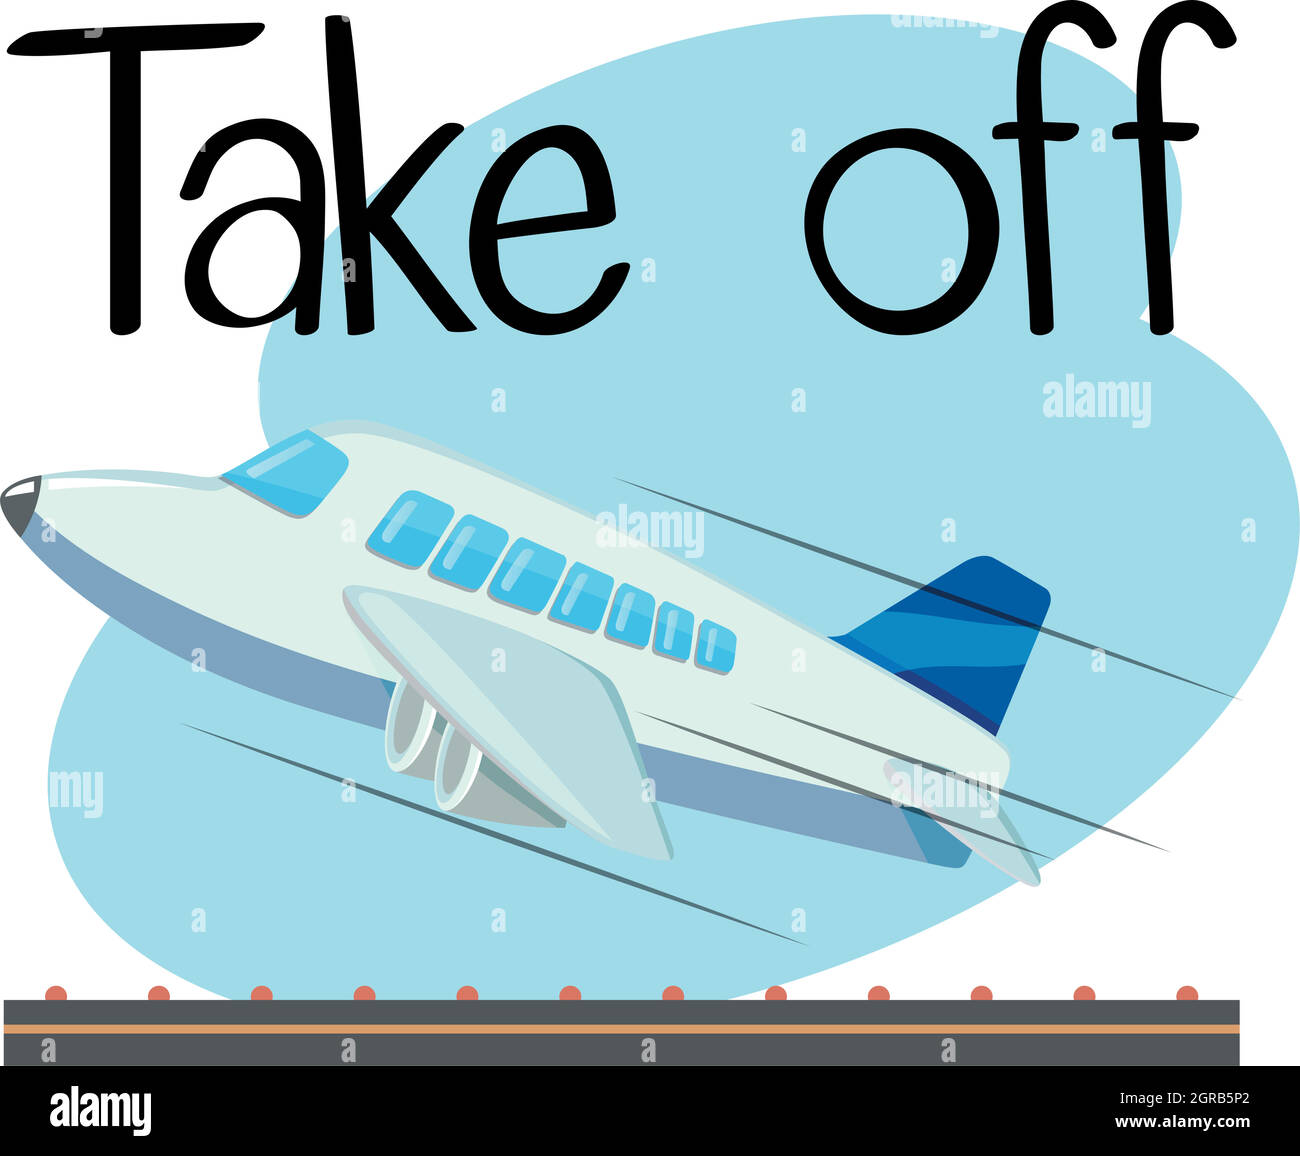 Wordcard per decollo con aereo decollo Illustrazione Vettoriale